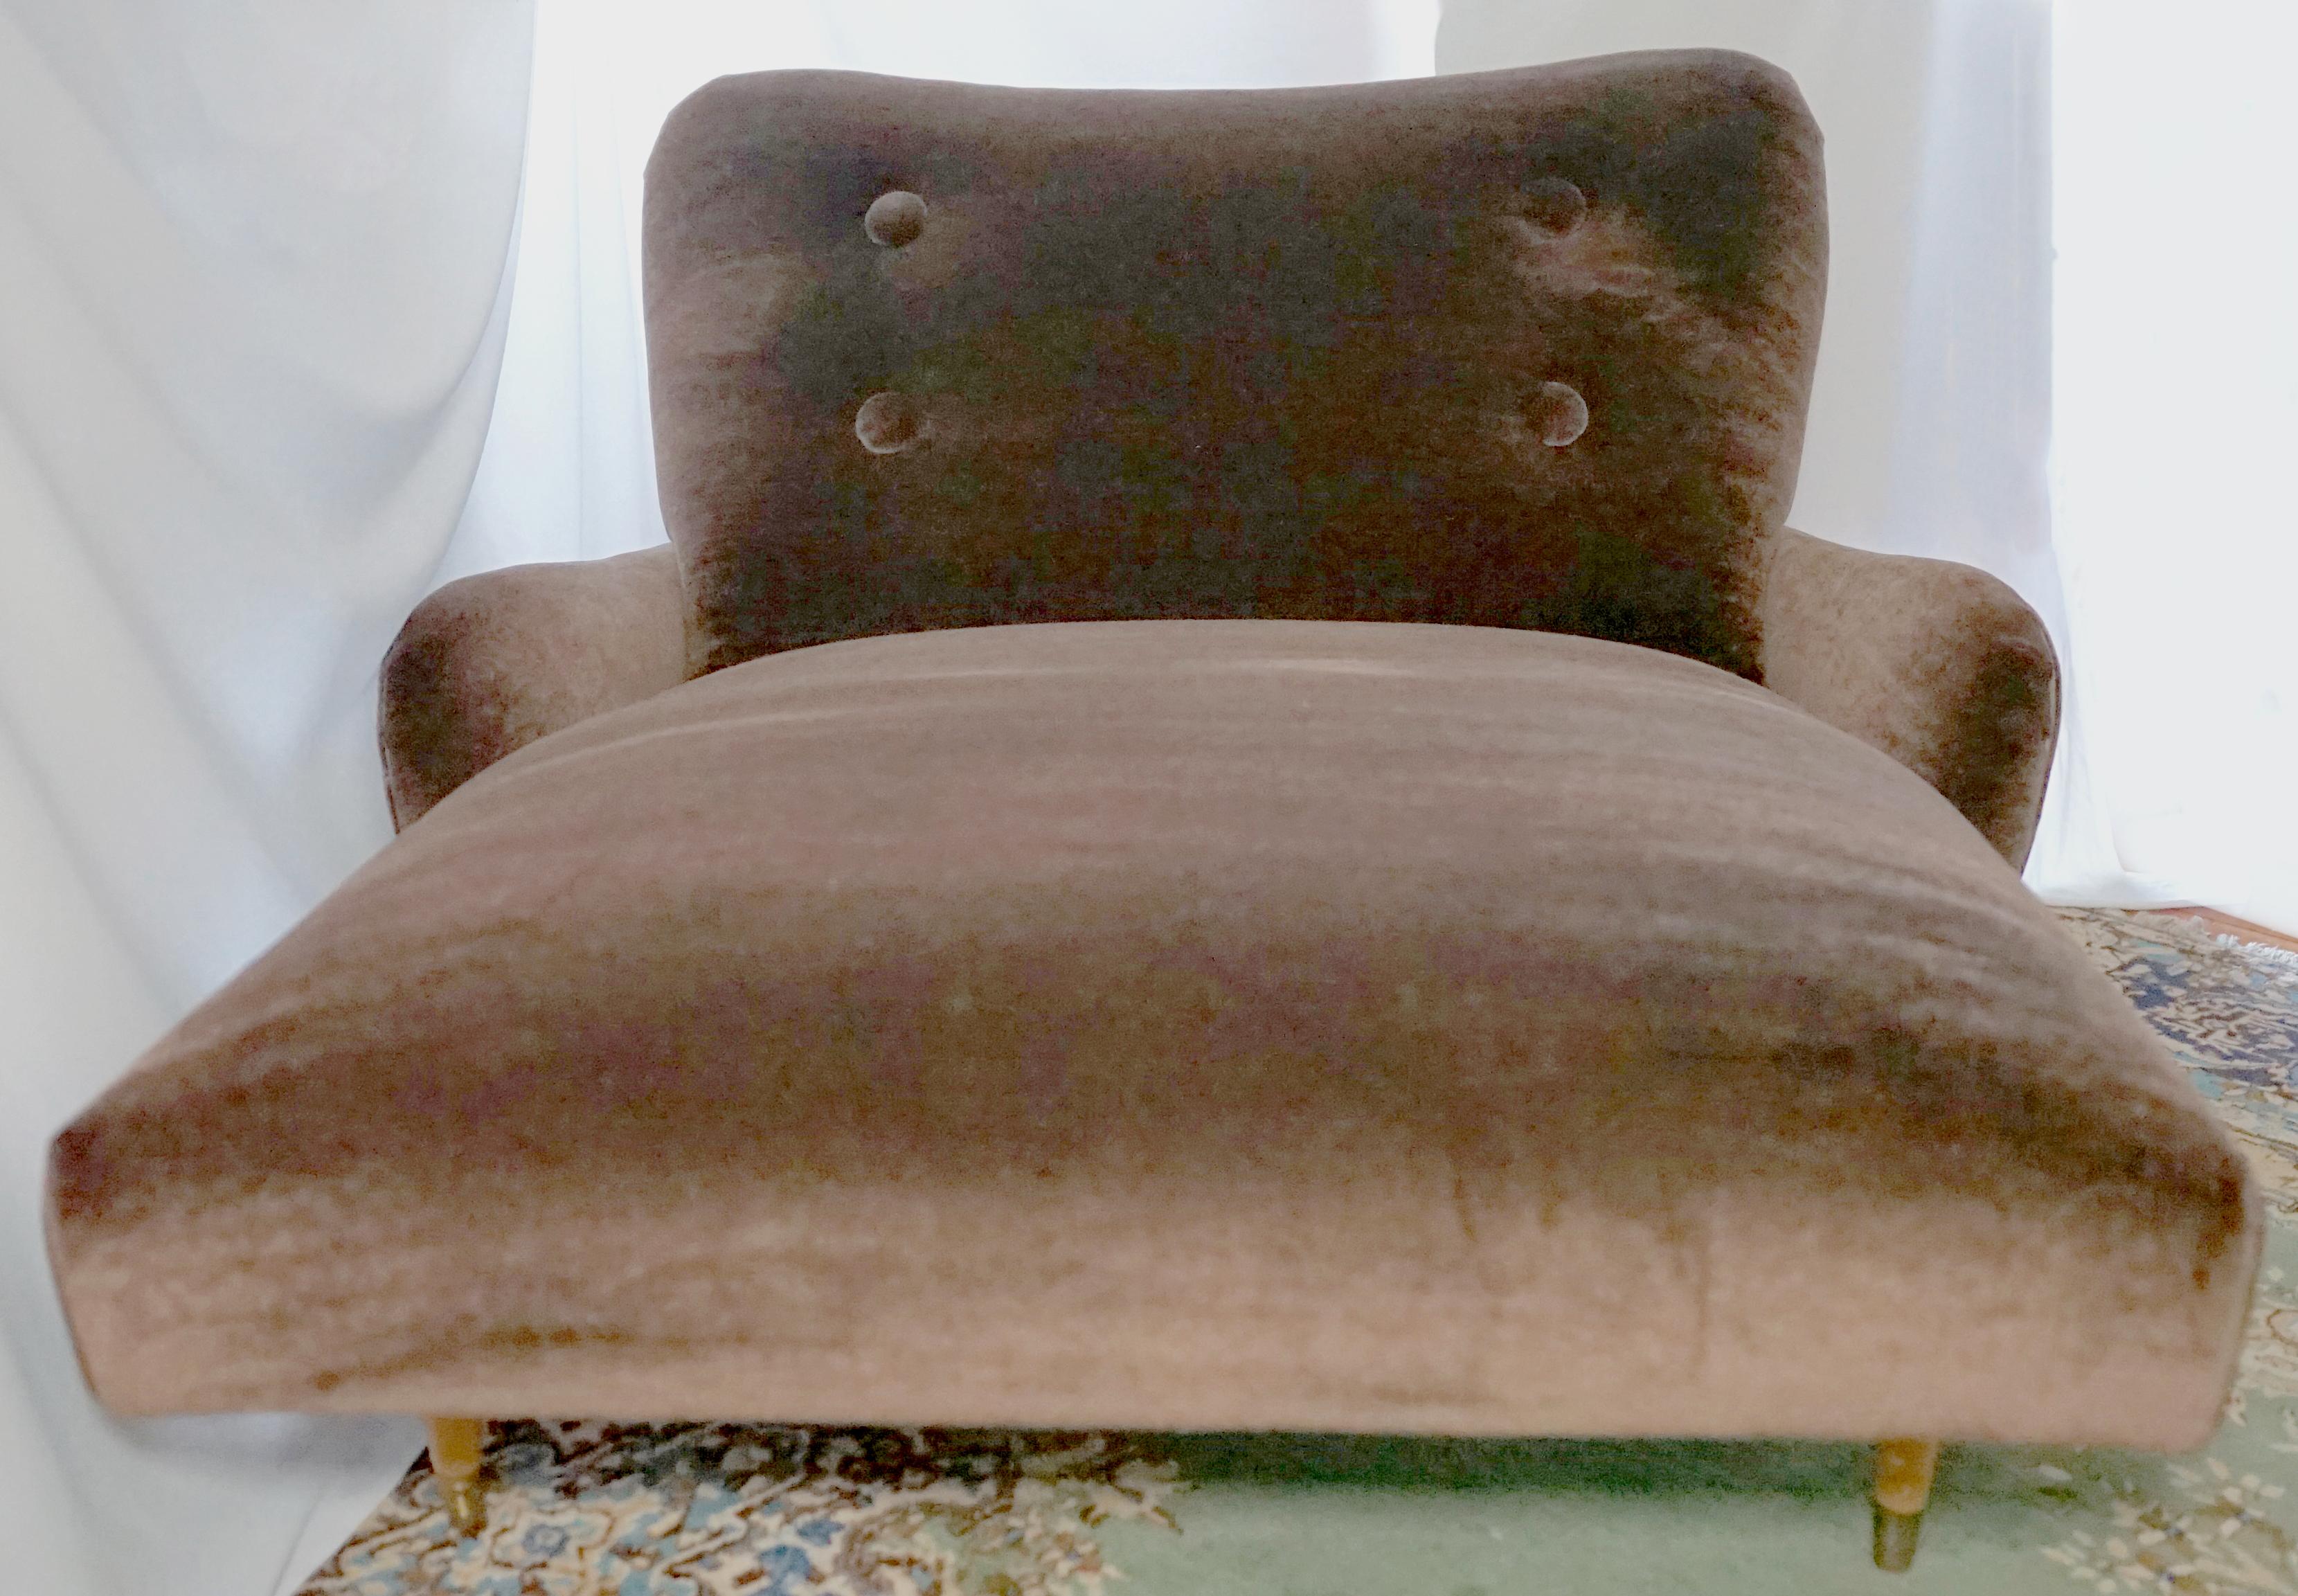 La forme, la fonction et le luxe se rencontrent ici avec la beauté du mohair en velours chocolat qui recouvre une chaise longue super-élégante du milieu du siècle.
Plus fin que le cachemire, plus durable que la laine, ce choix de tissu s'approche du